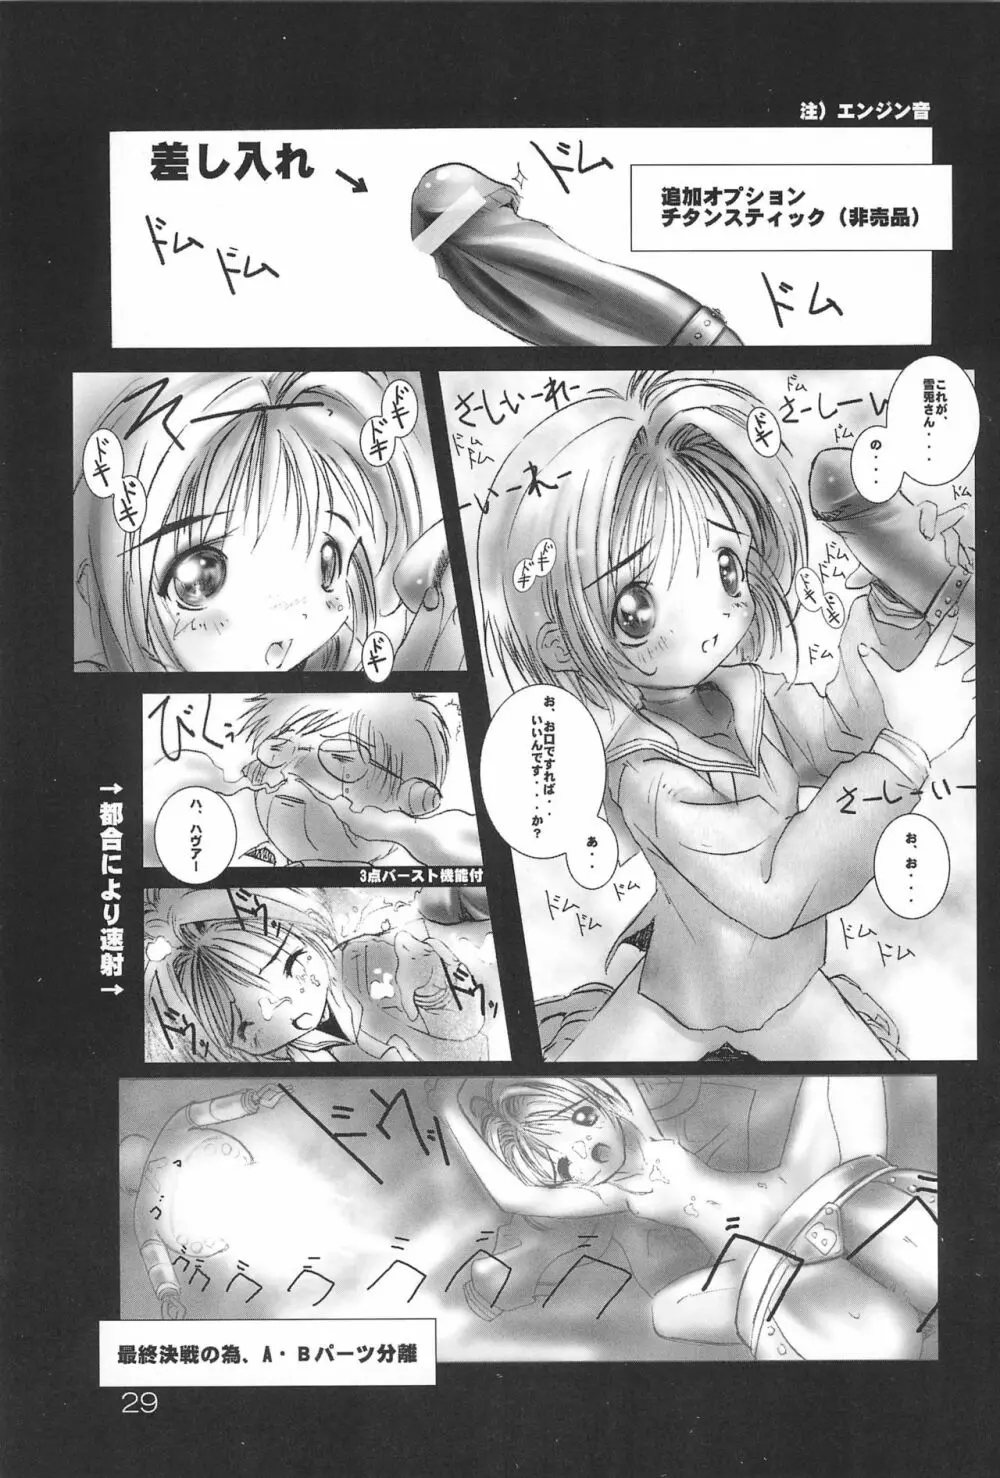 sakura 4th The last card 29ページ